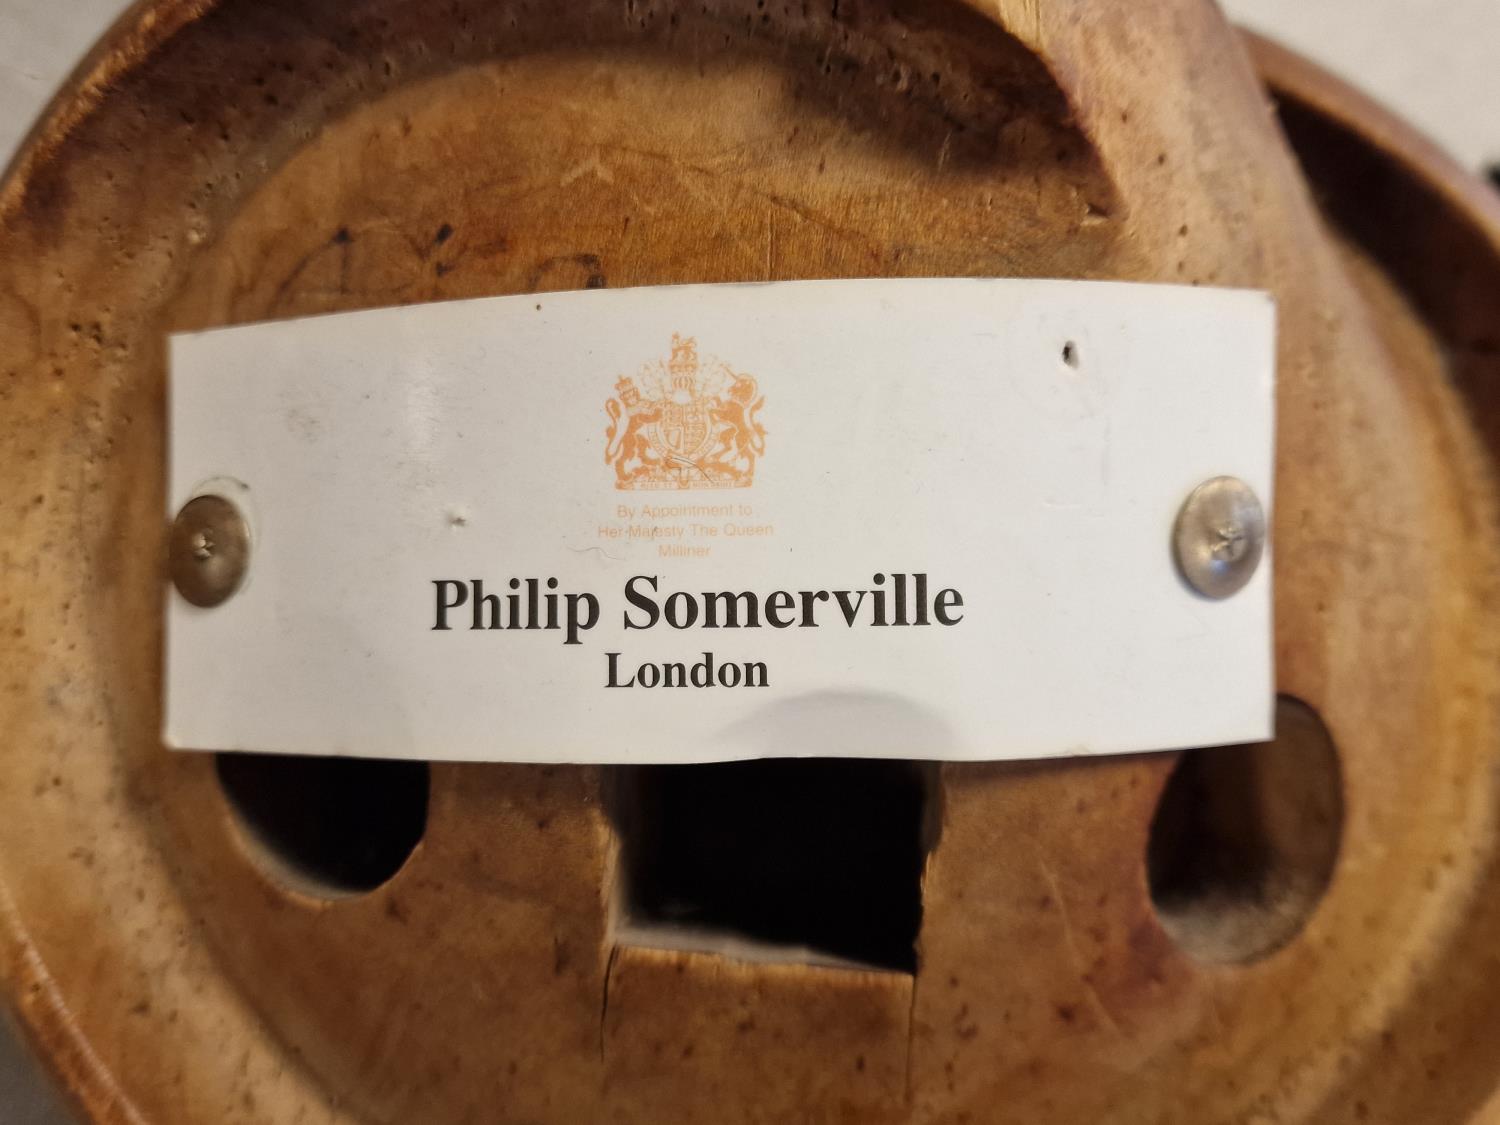 Philip Somerville Designer Milliner's Hat Block - Royal Milliner to the Queen - Image 5 of 5